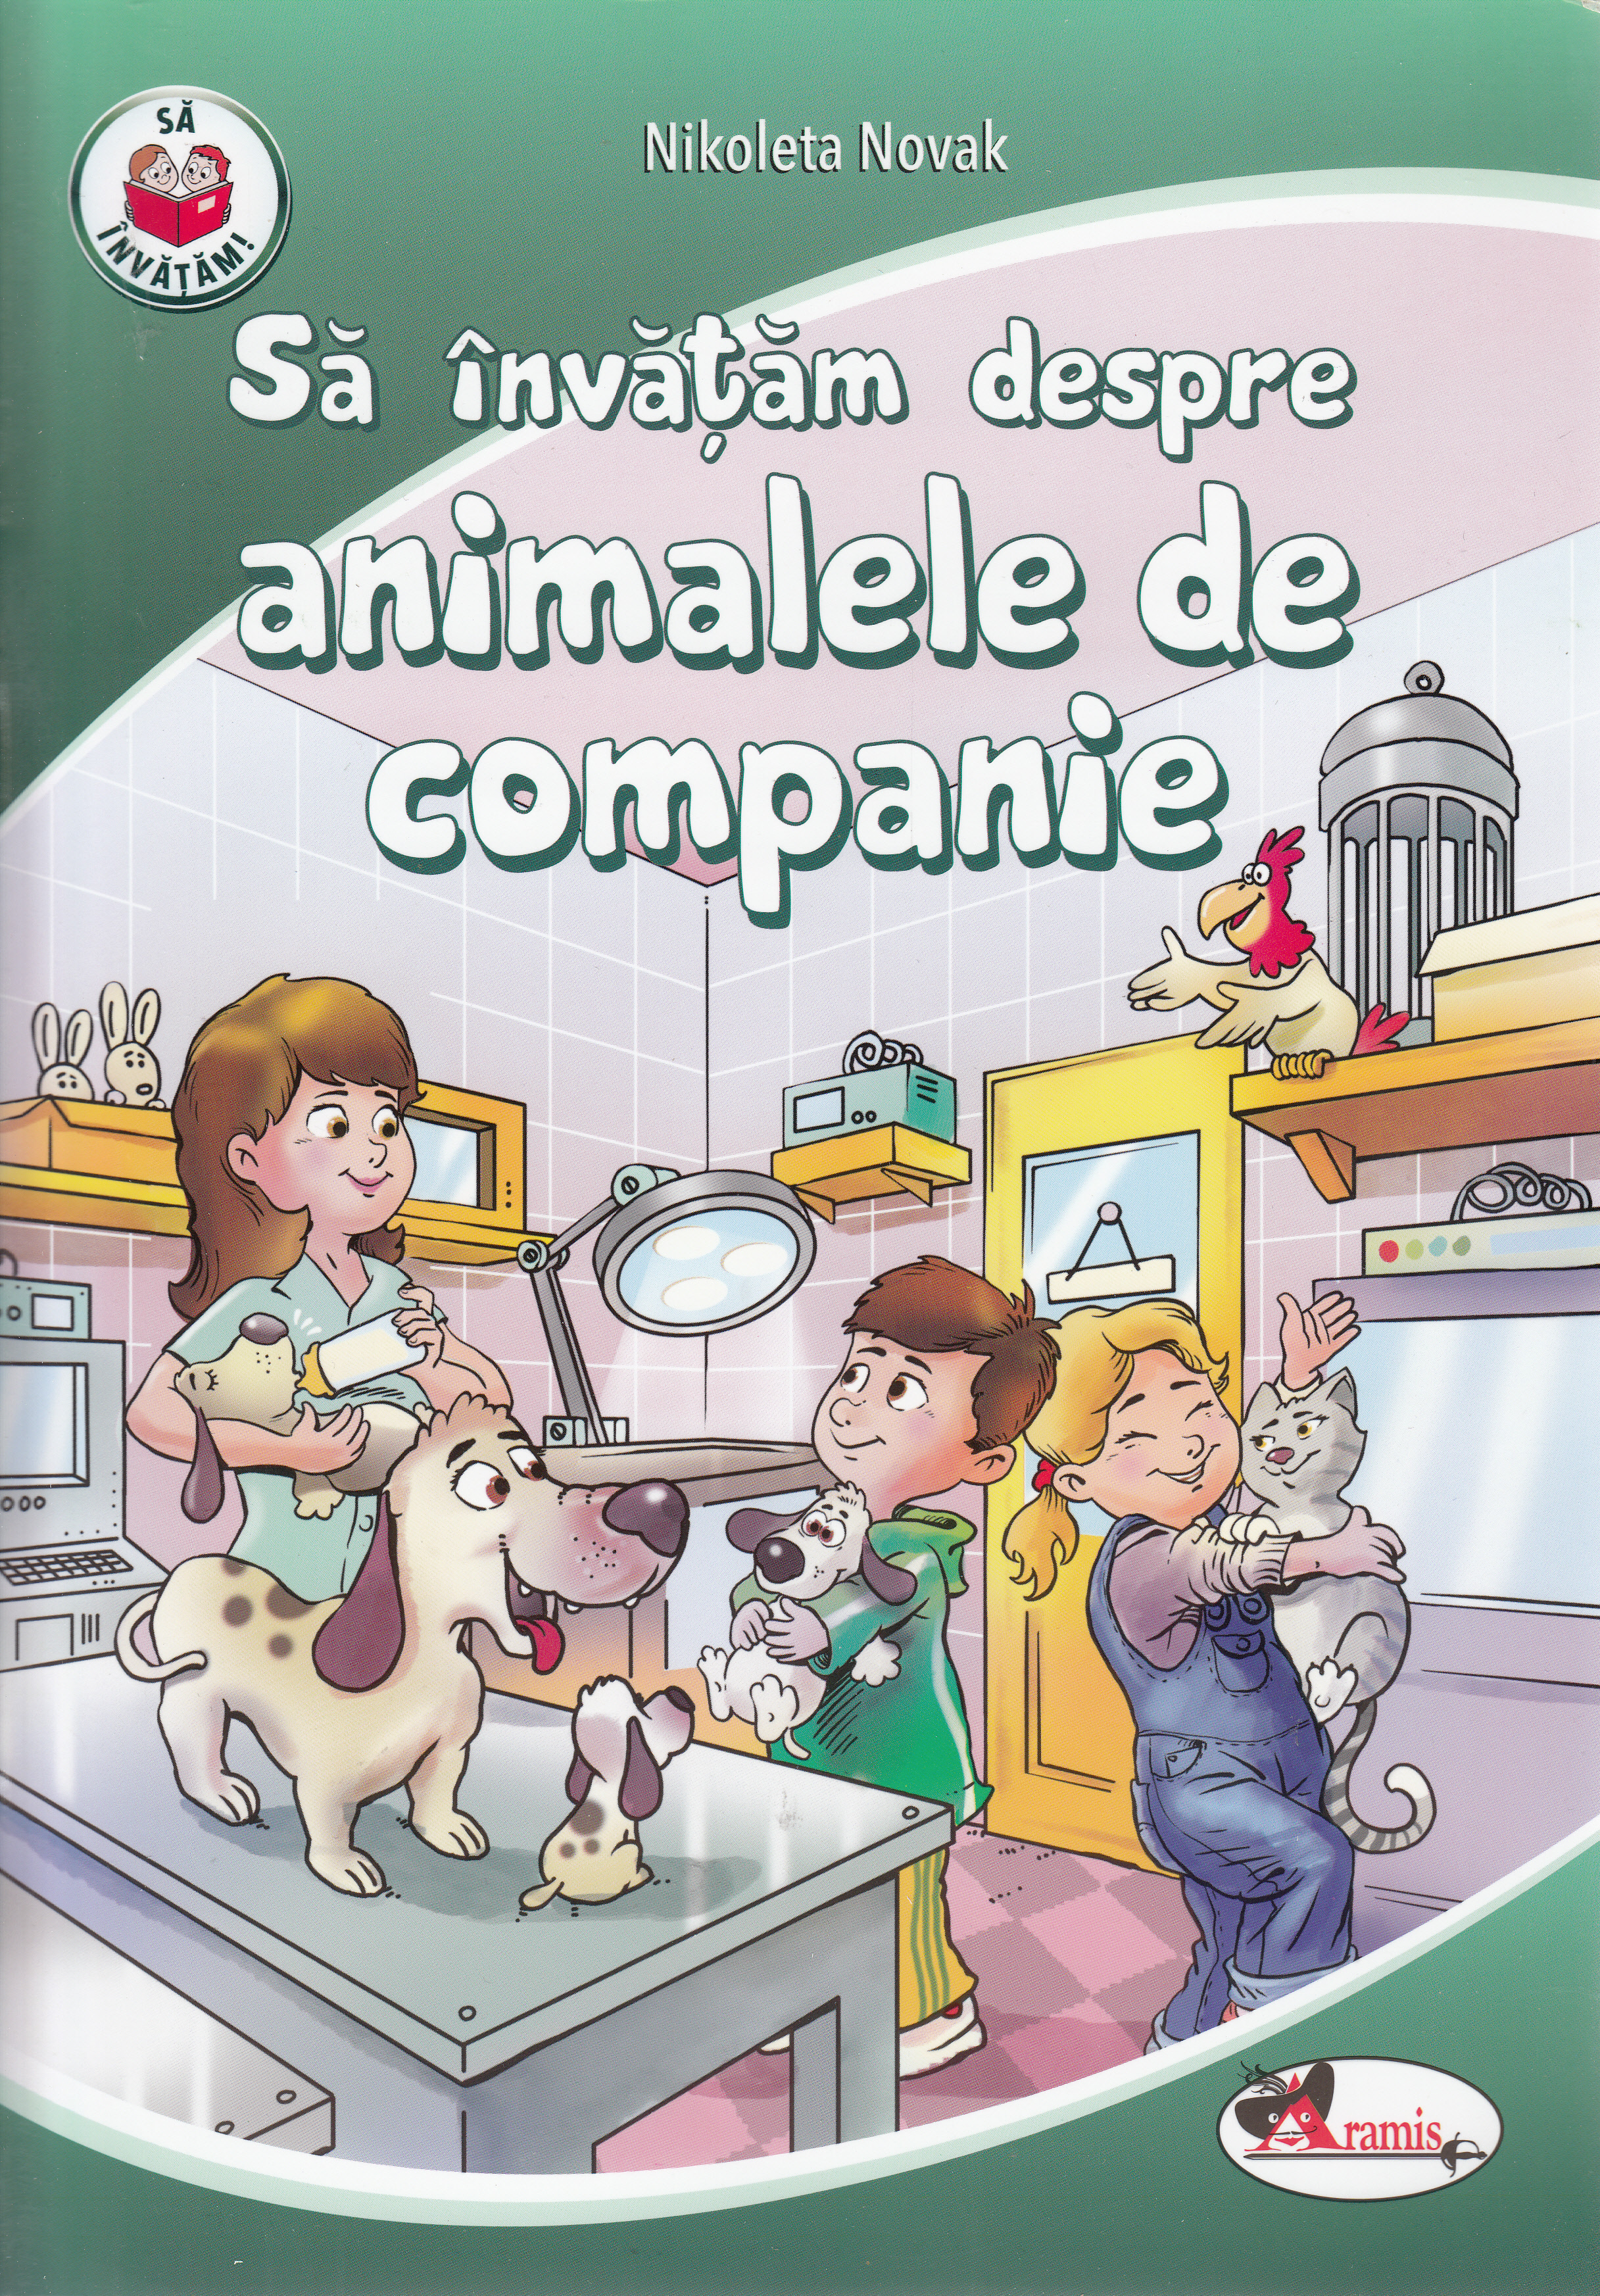 Sa invatam despre animalele de companie - Nikoleta Novak